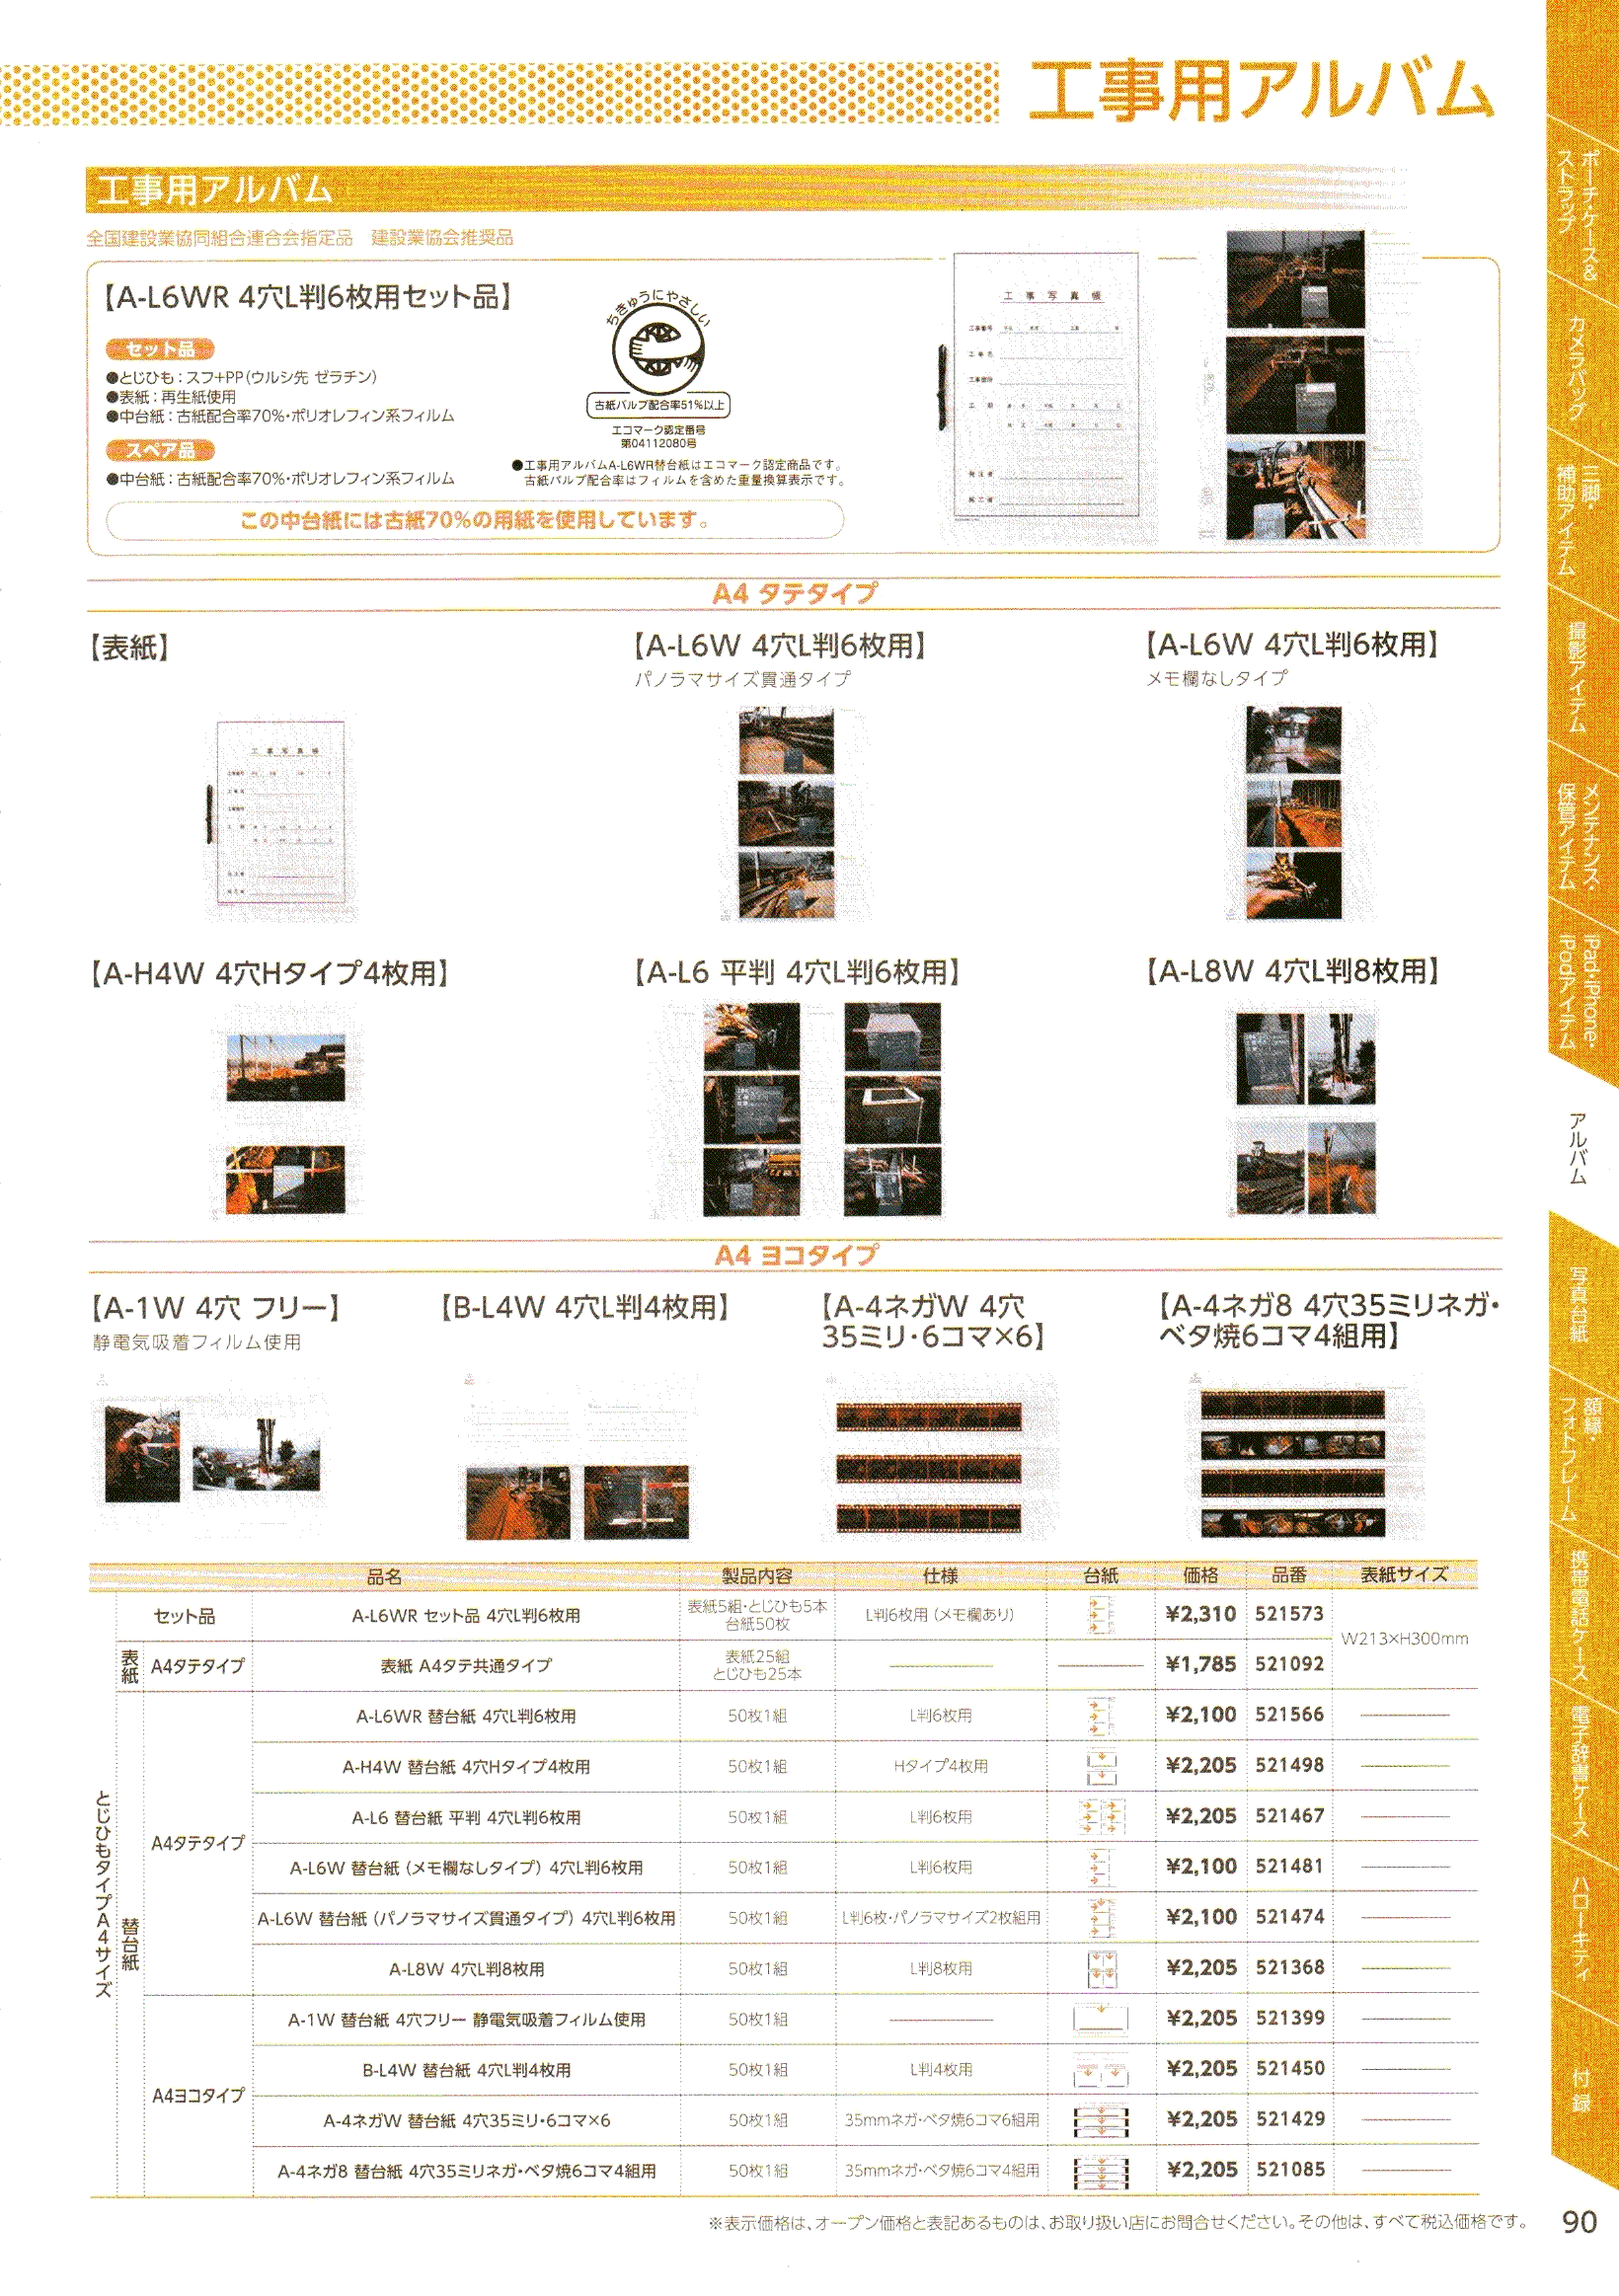 デジタル一眼レフカメラ比較・選び方入門 デジ一.com　HAKUBA（ハクバ）最新カタログ　P090（工事用写真アルバム）